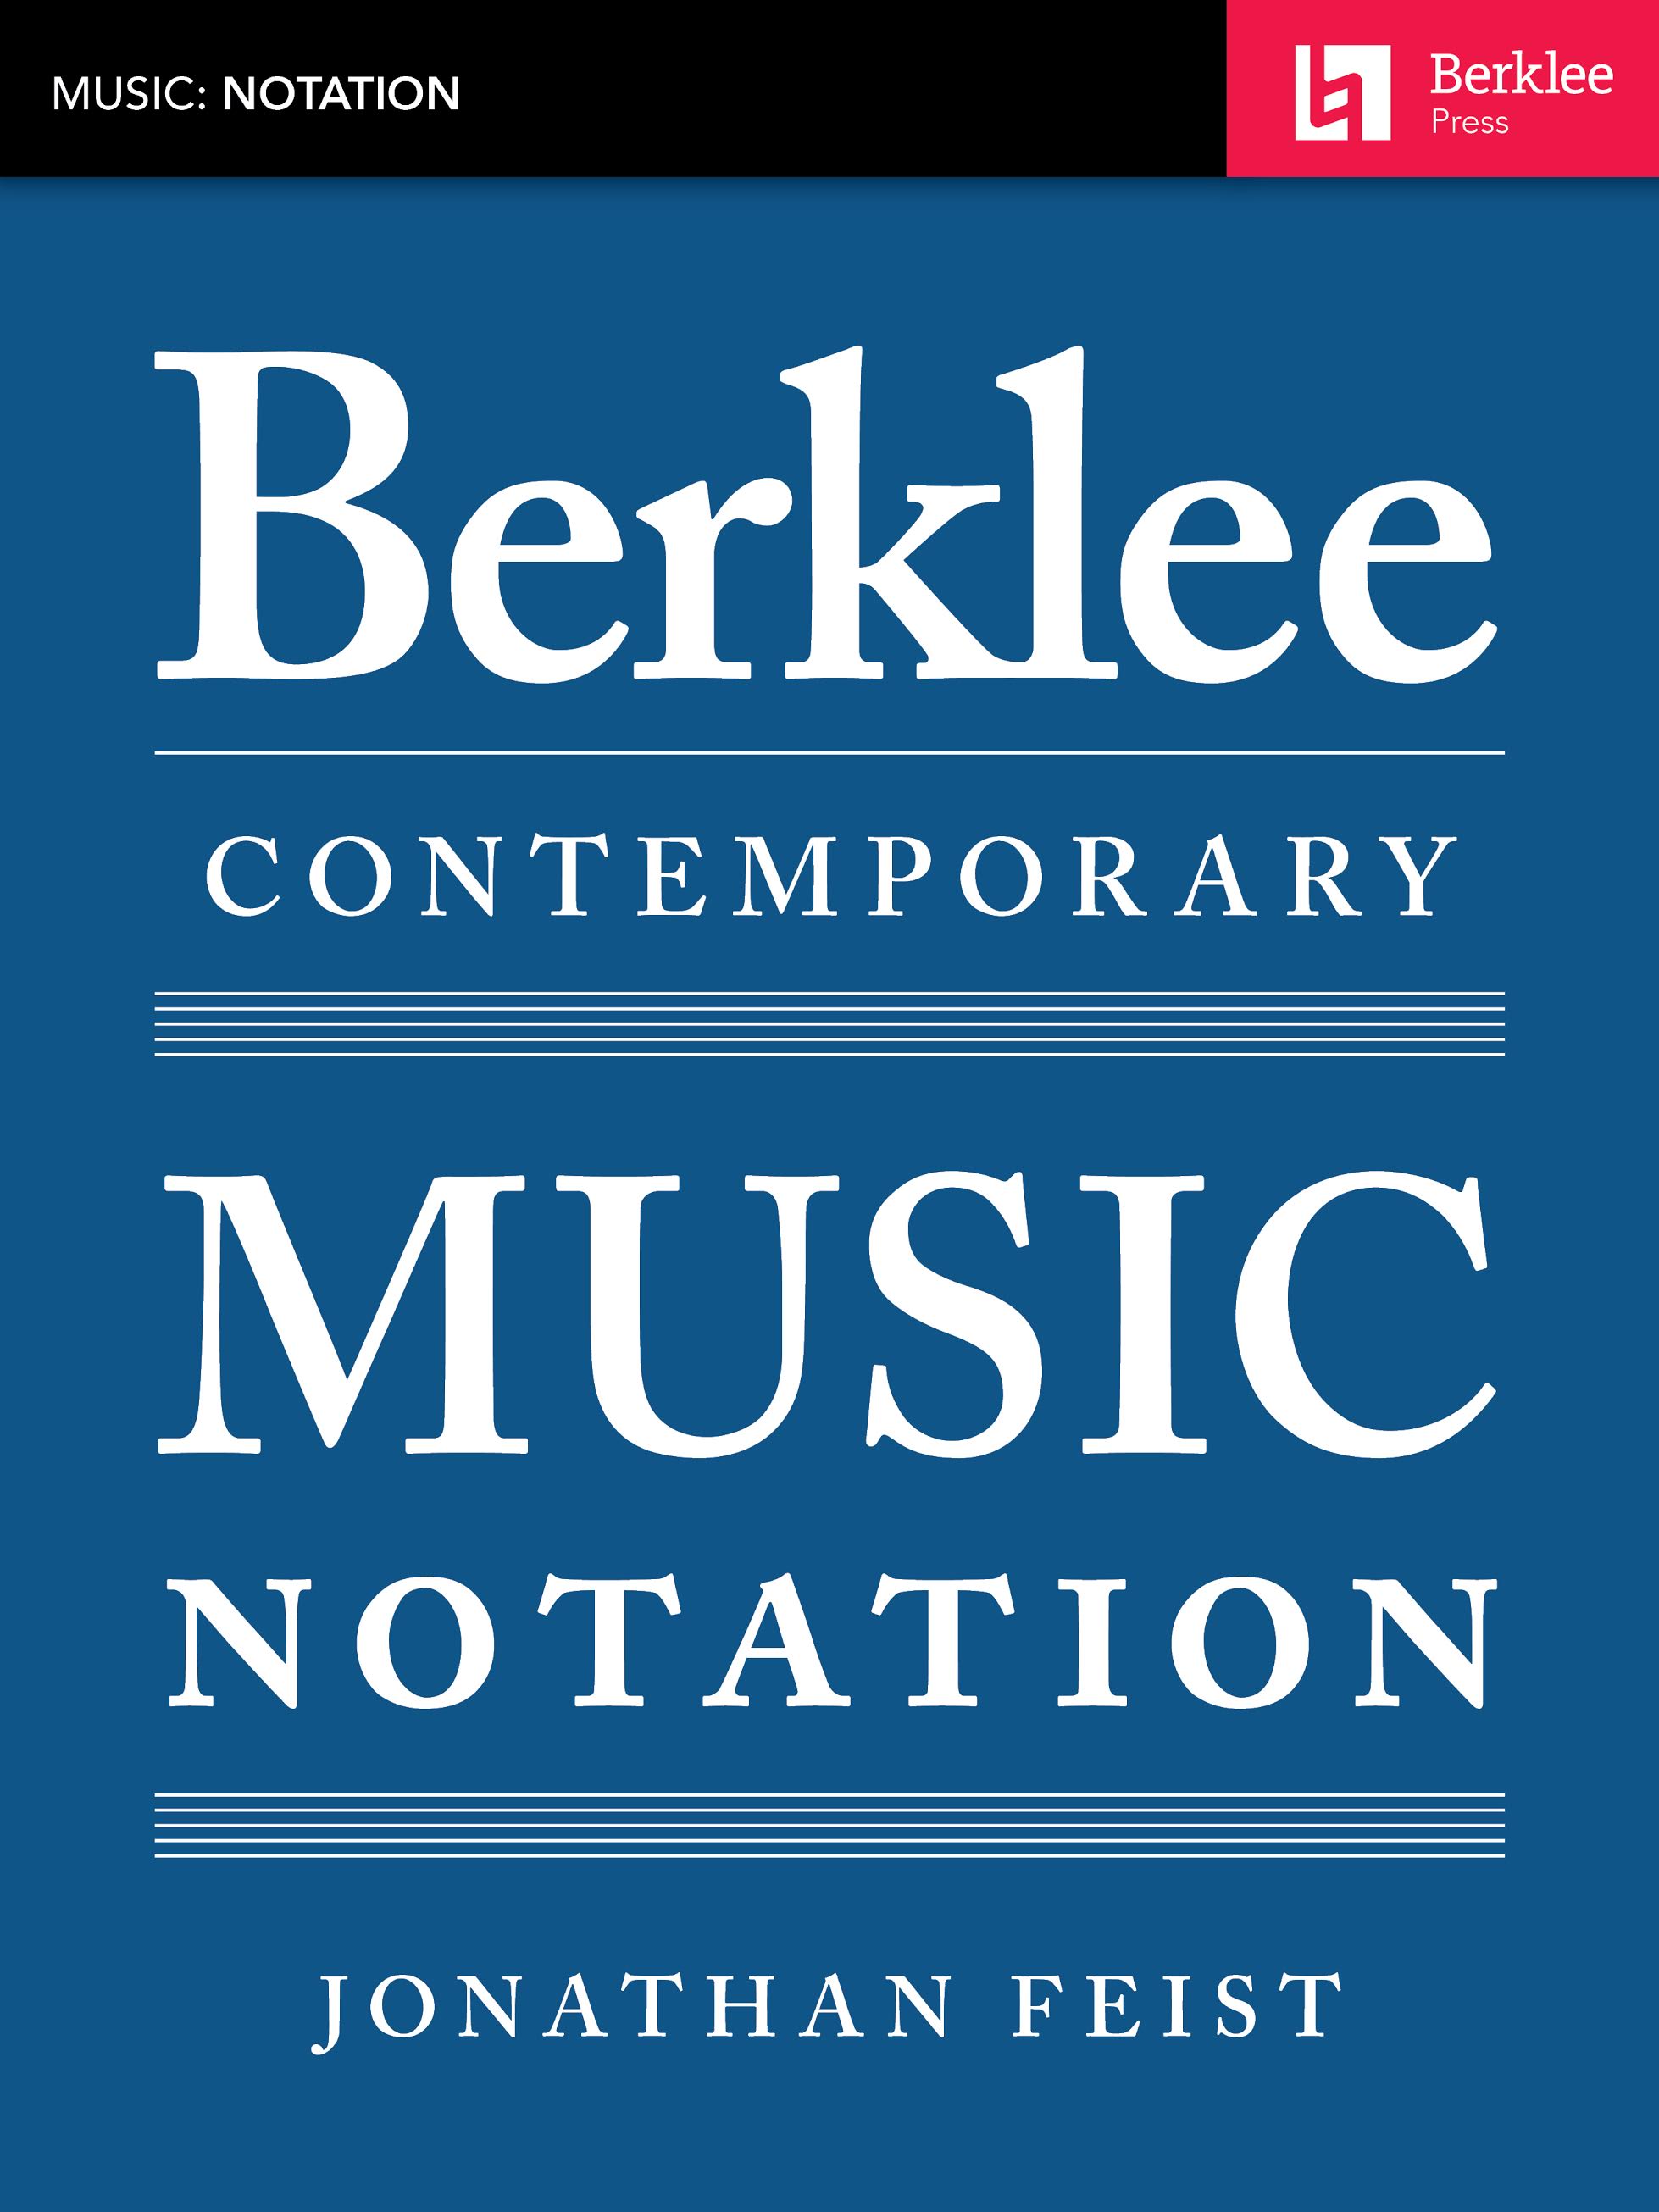 ファイスト氏の著作『Berklee Contemporary Music Notation』